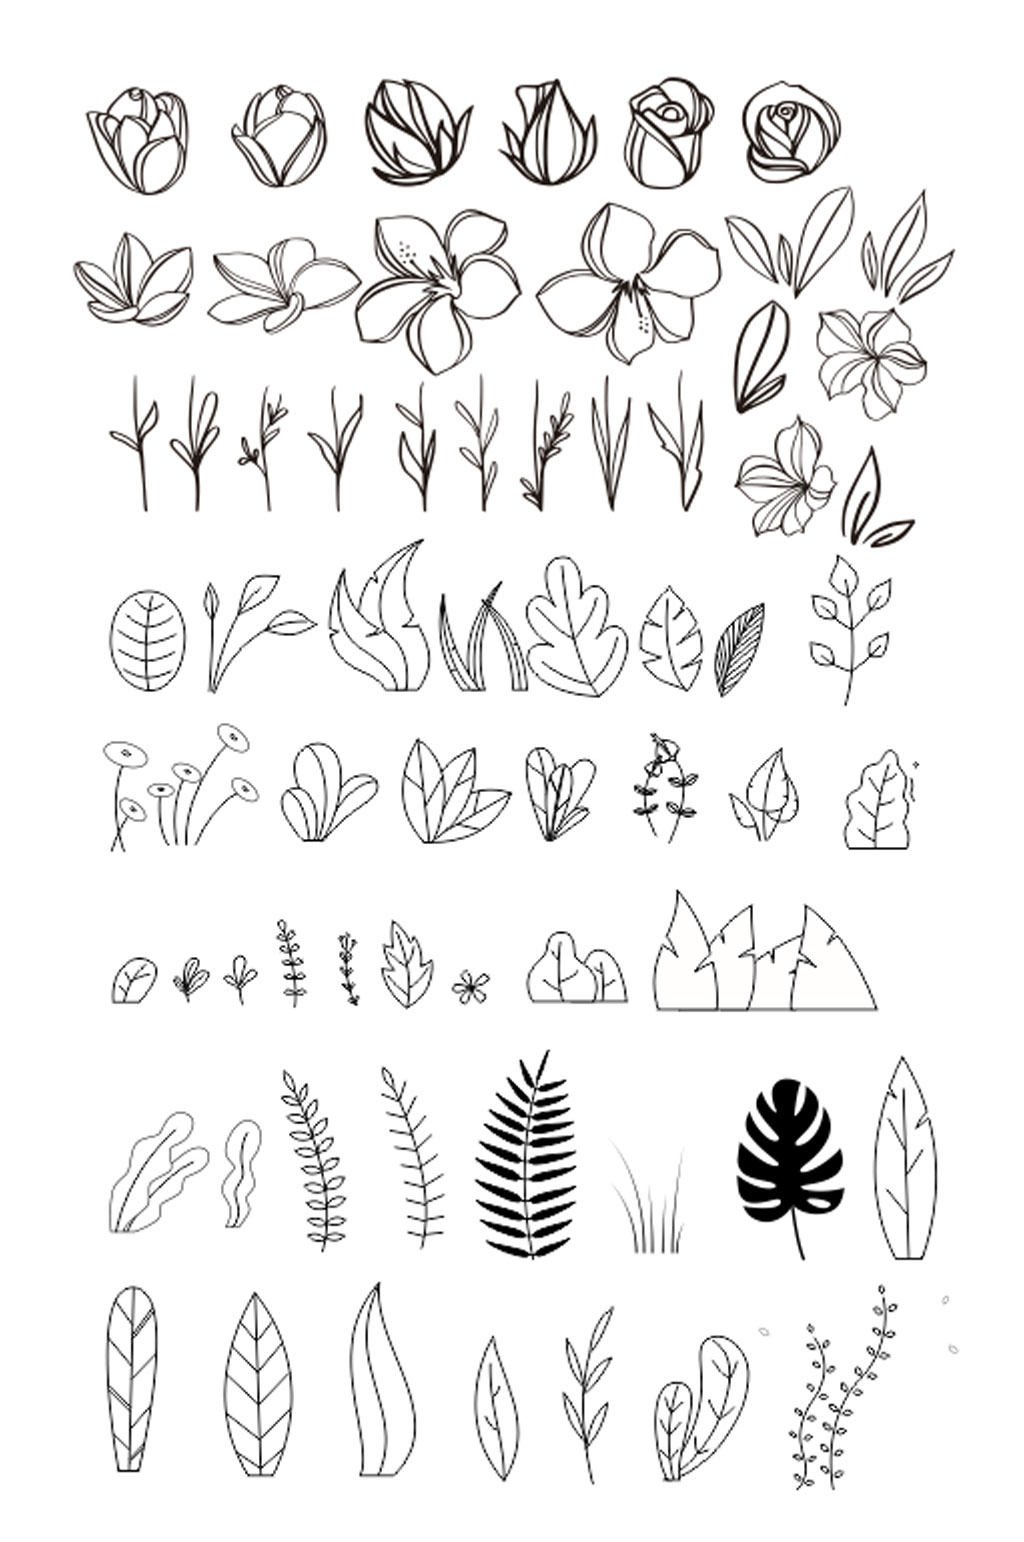 植物手绘简笔画图片-植物手绘简笔画素材-植物手绘简笔画模板大全-众图网